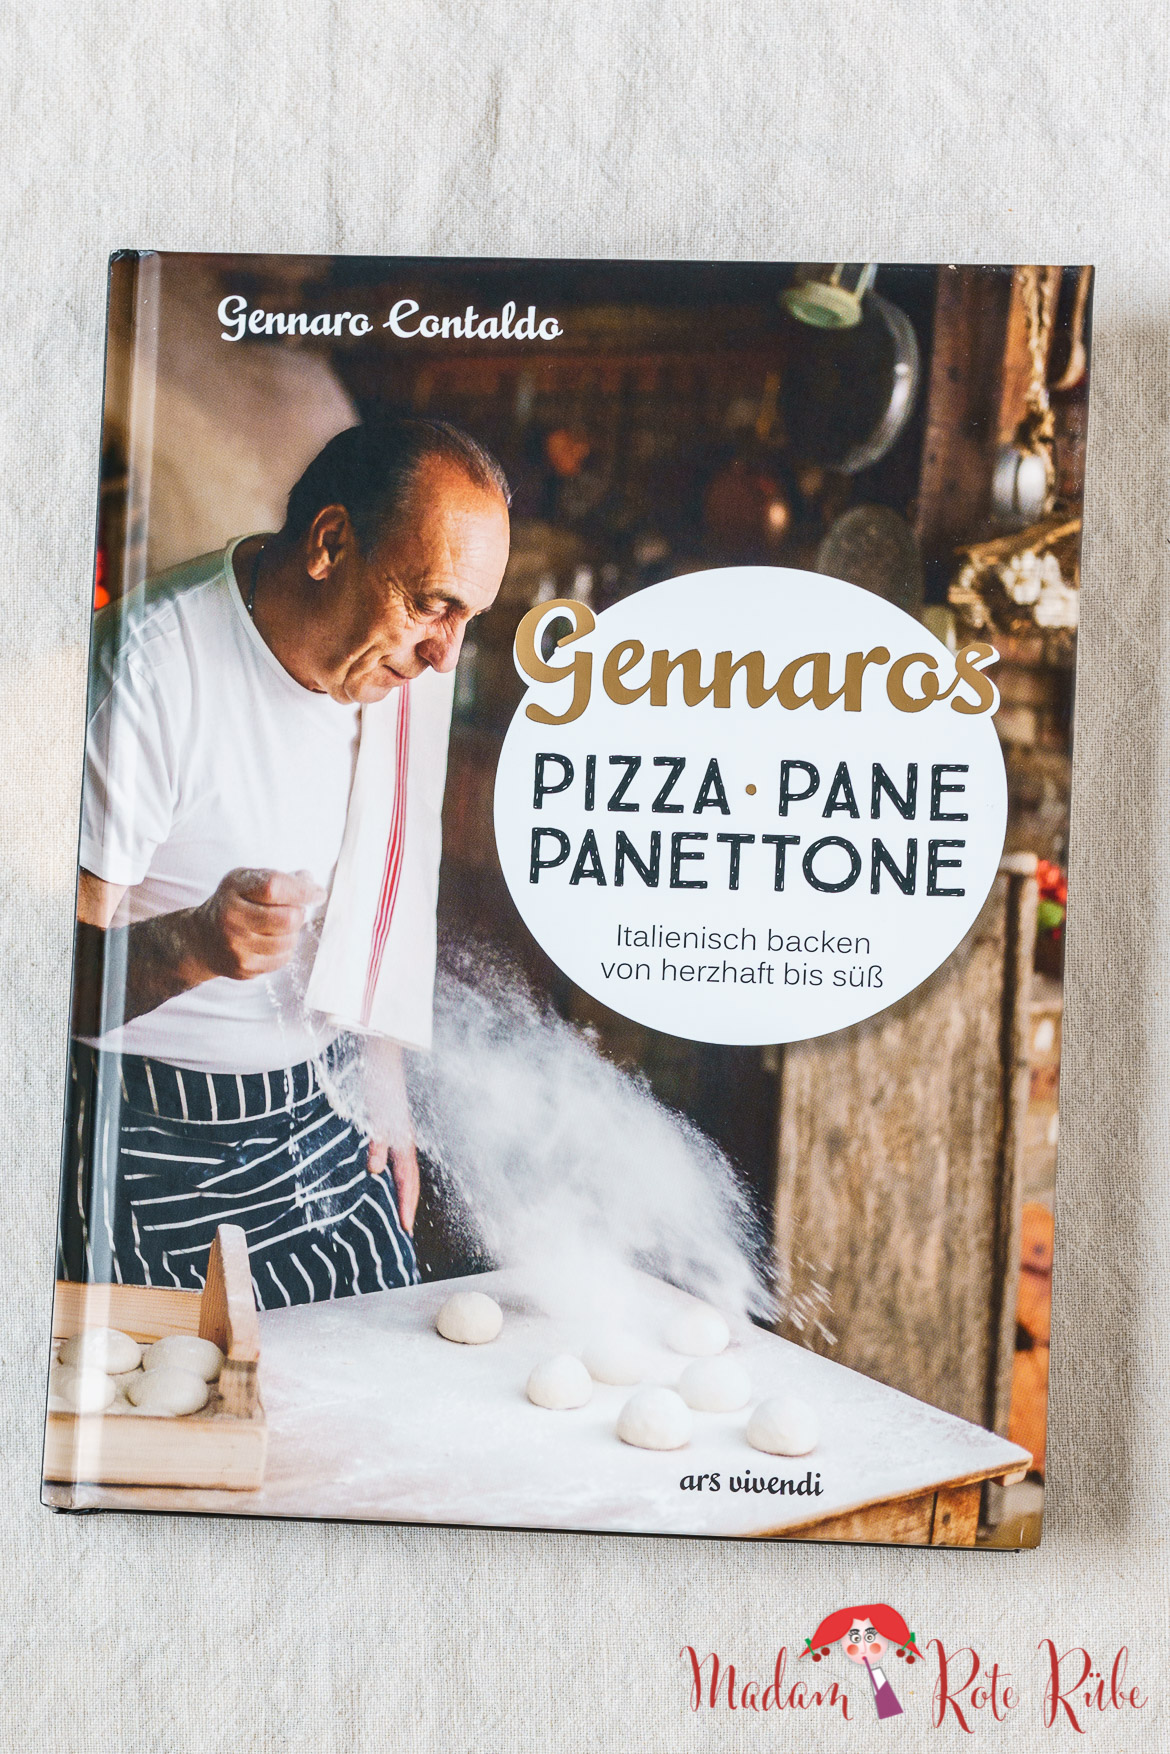 Madam Rote Rübe - Focaccia mit Paprika und eine Rezension: "Gennaros Pizza, Pane, Panettone" von Gennaro Contaldo